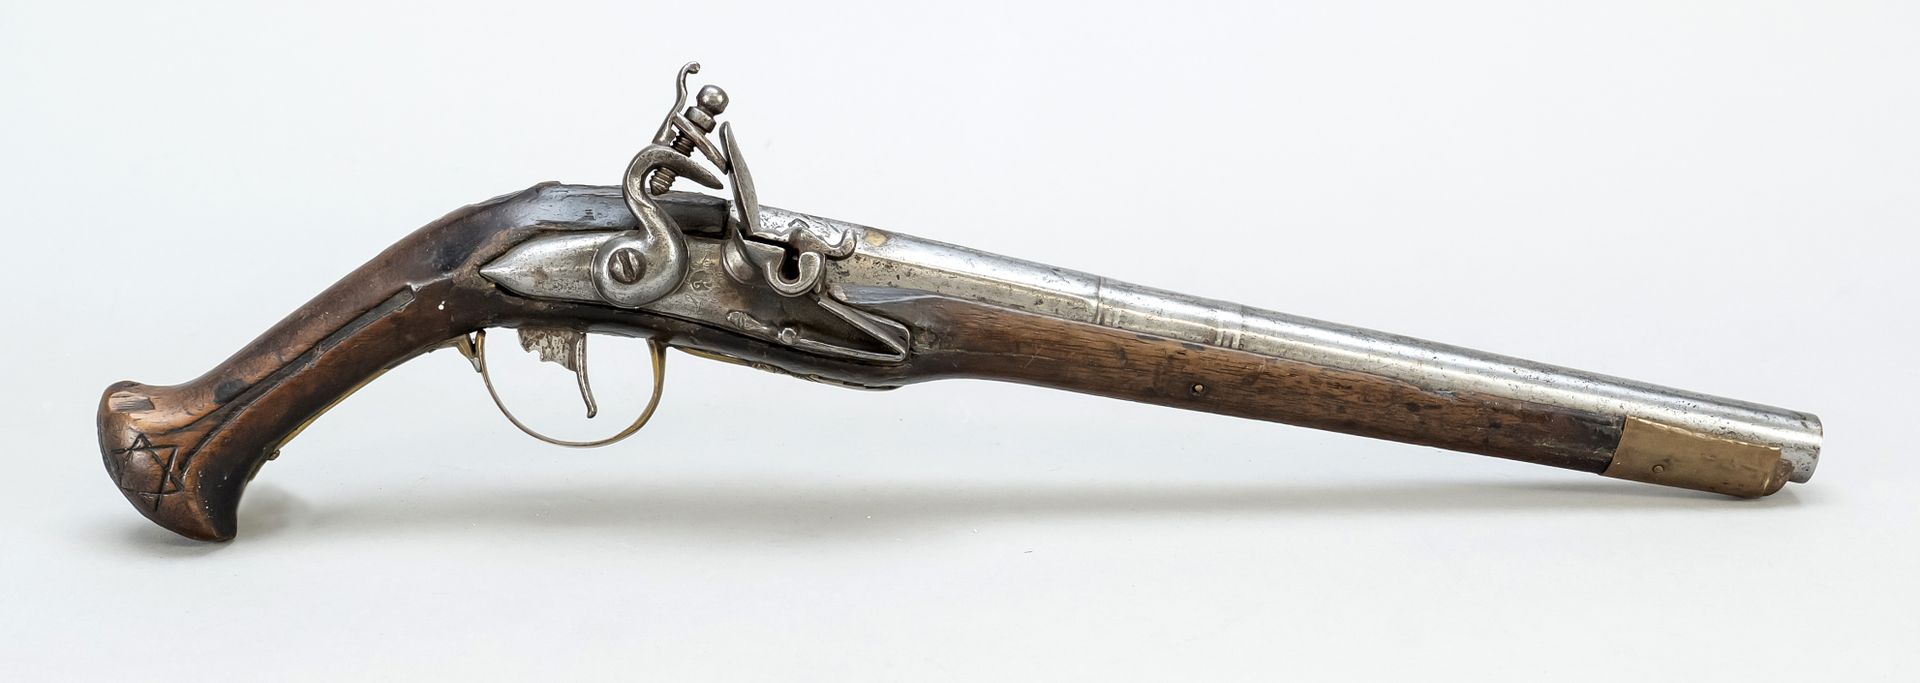 Null 燧发枪，18世纪，深色硬木枪托，铁制枪管。手柄鞍座上雕刻着大卫之星。公鸡和扳机，长43厘米。